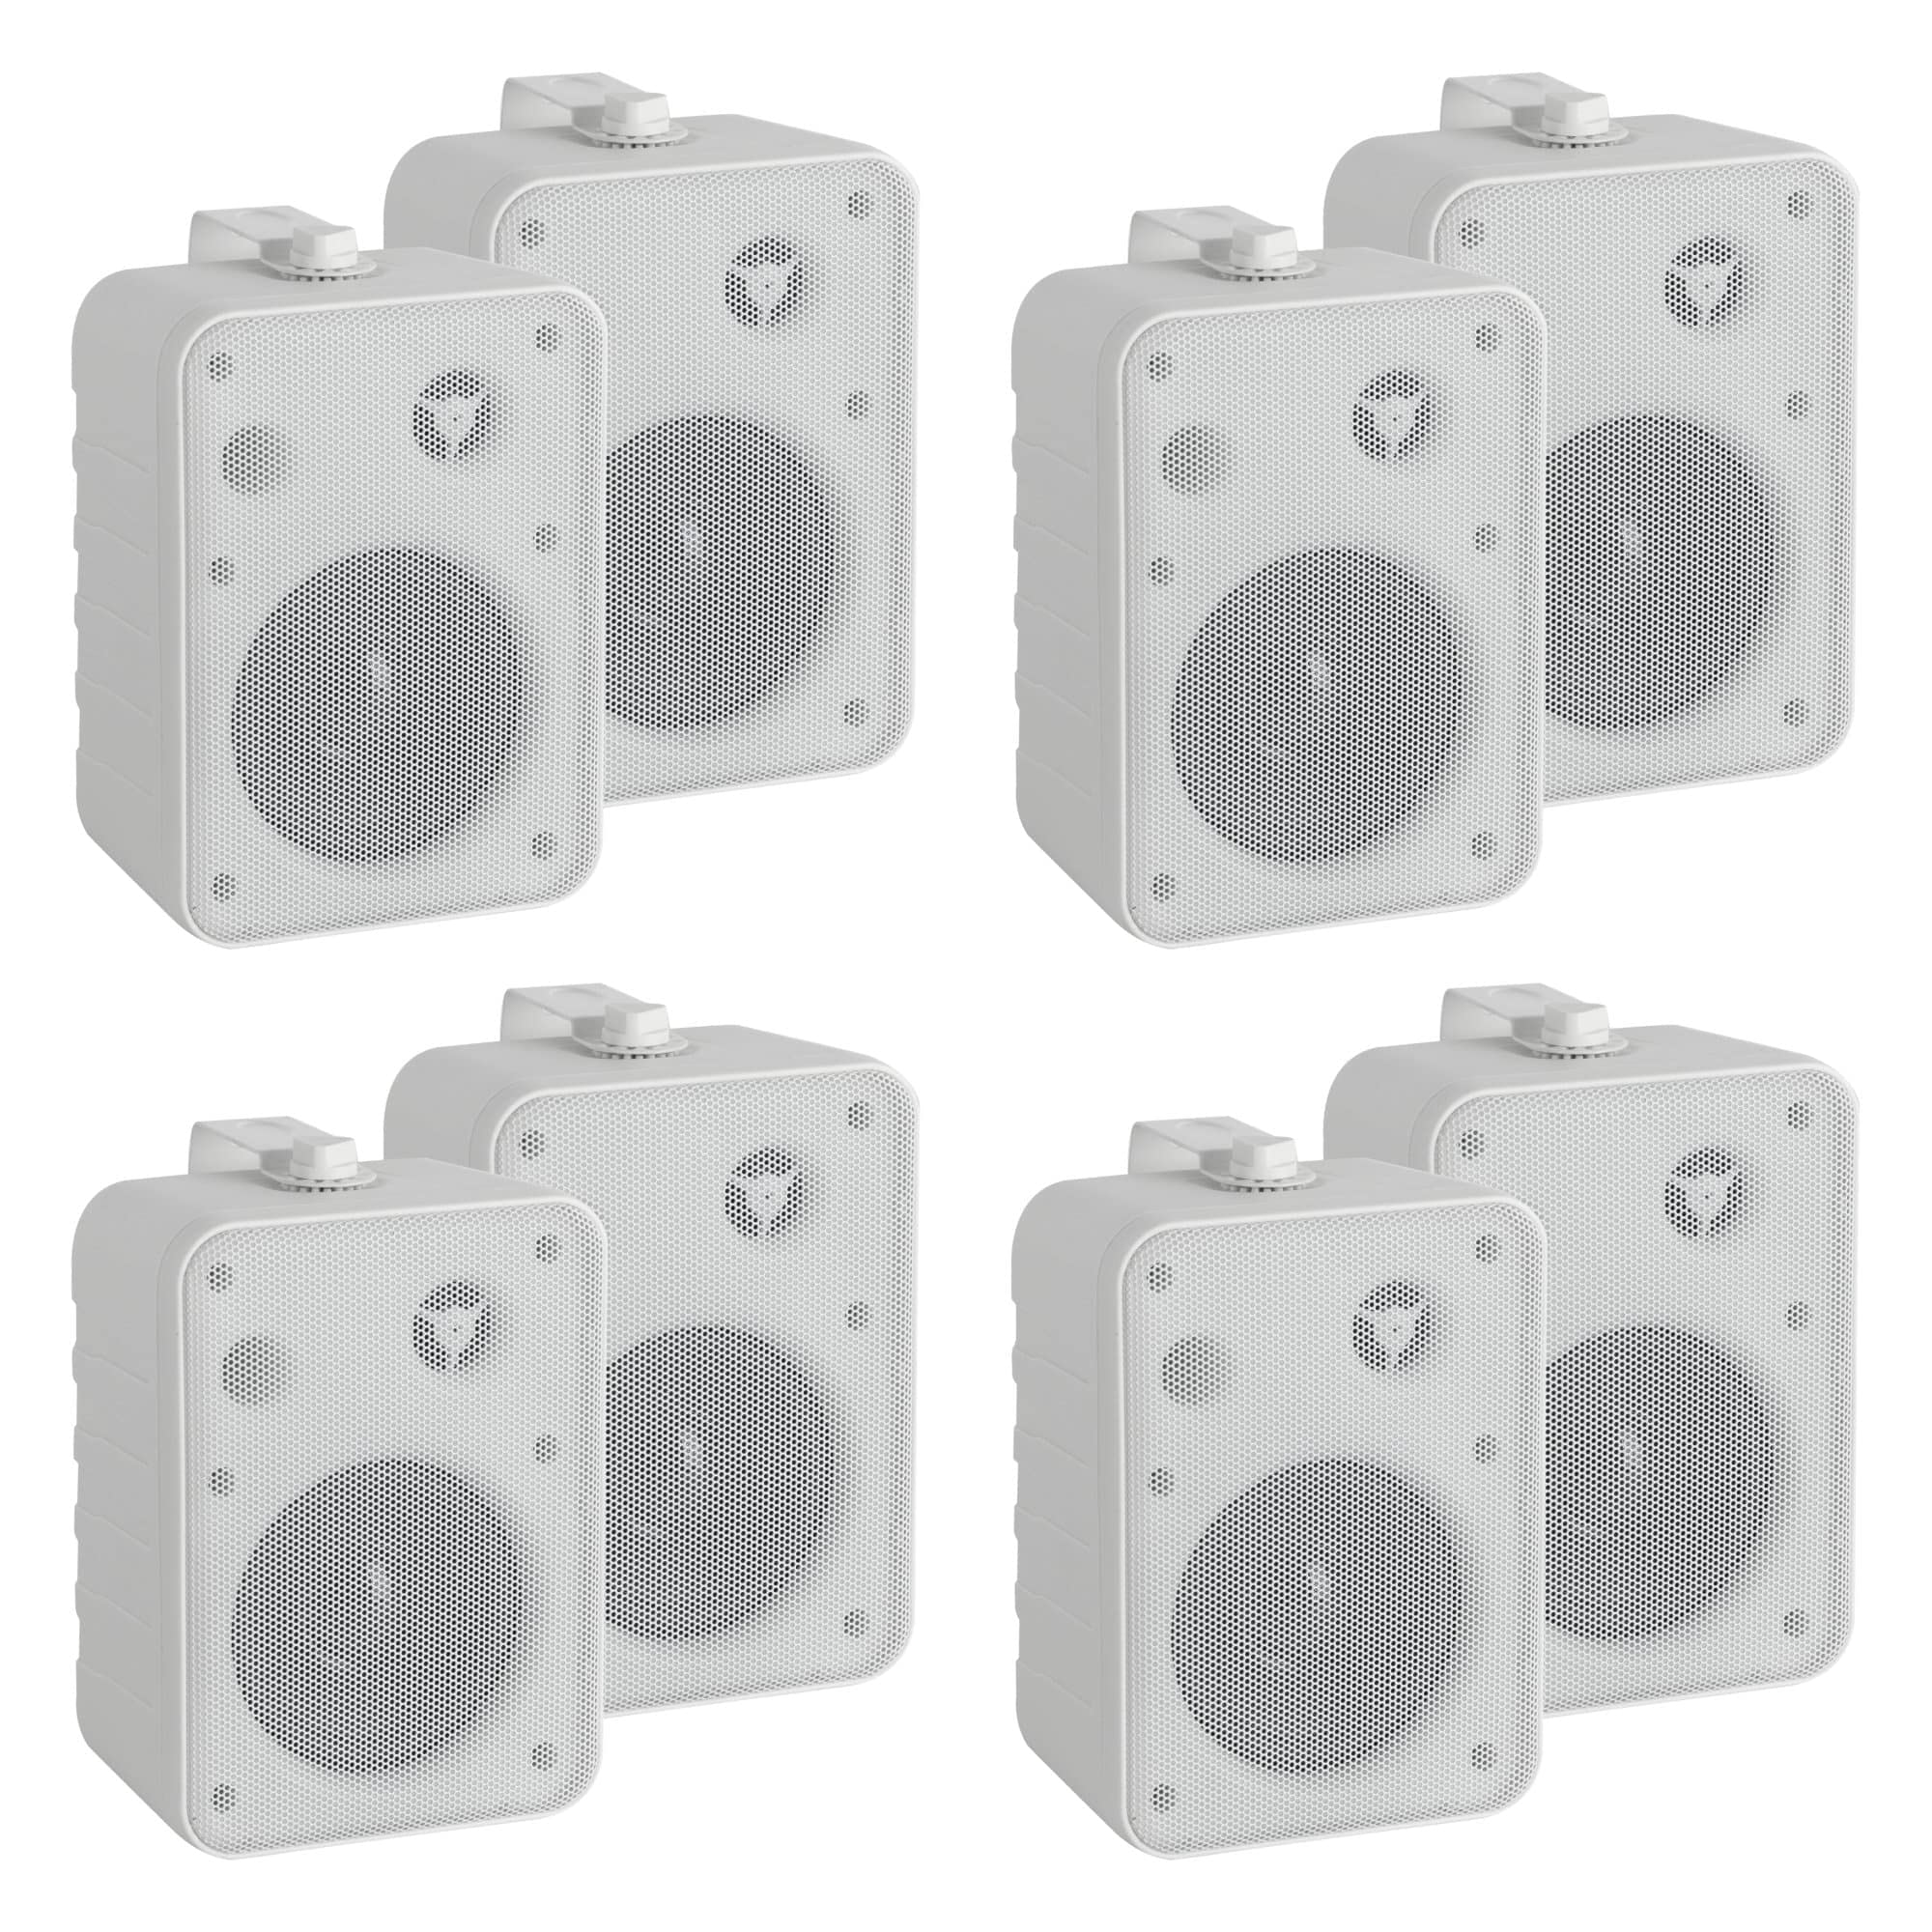 McGrey One Control WH MKIII Lautsprecher 4 Paar - Kompakt-Boxen für Installation, Studio oder HiFi-Anwendung - 10 Watt RMS - 4" Woofer, 0,5" Hochtöner - Inkl. Montagebügel zur Wandbefestigung - Weiß